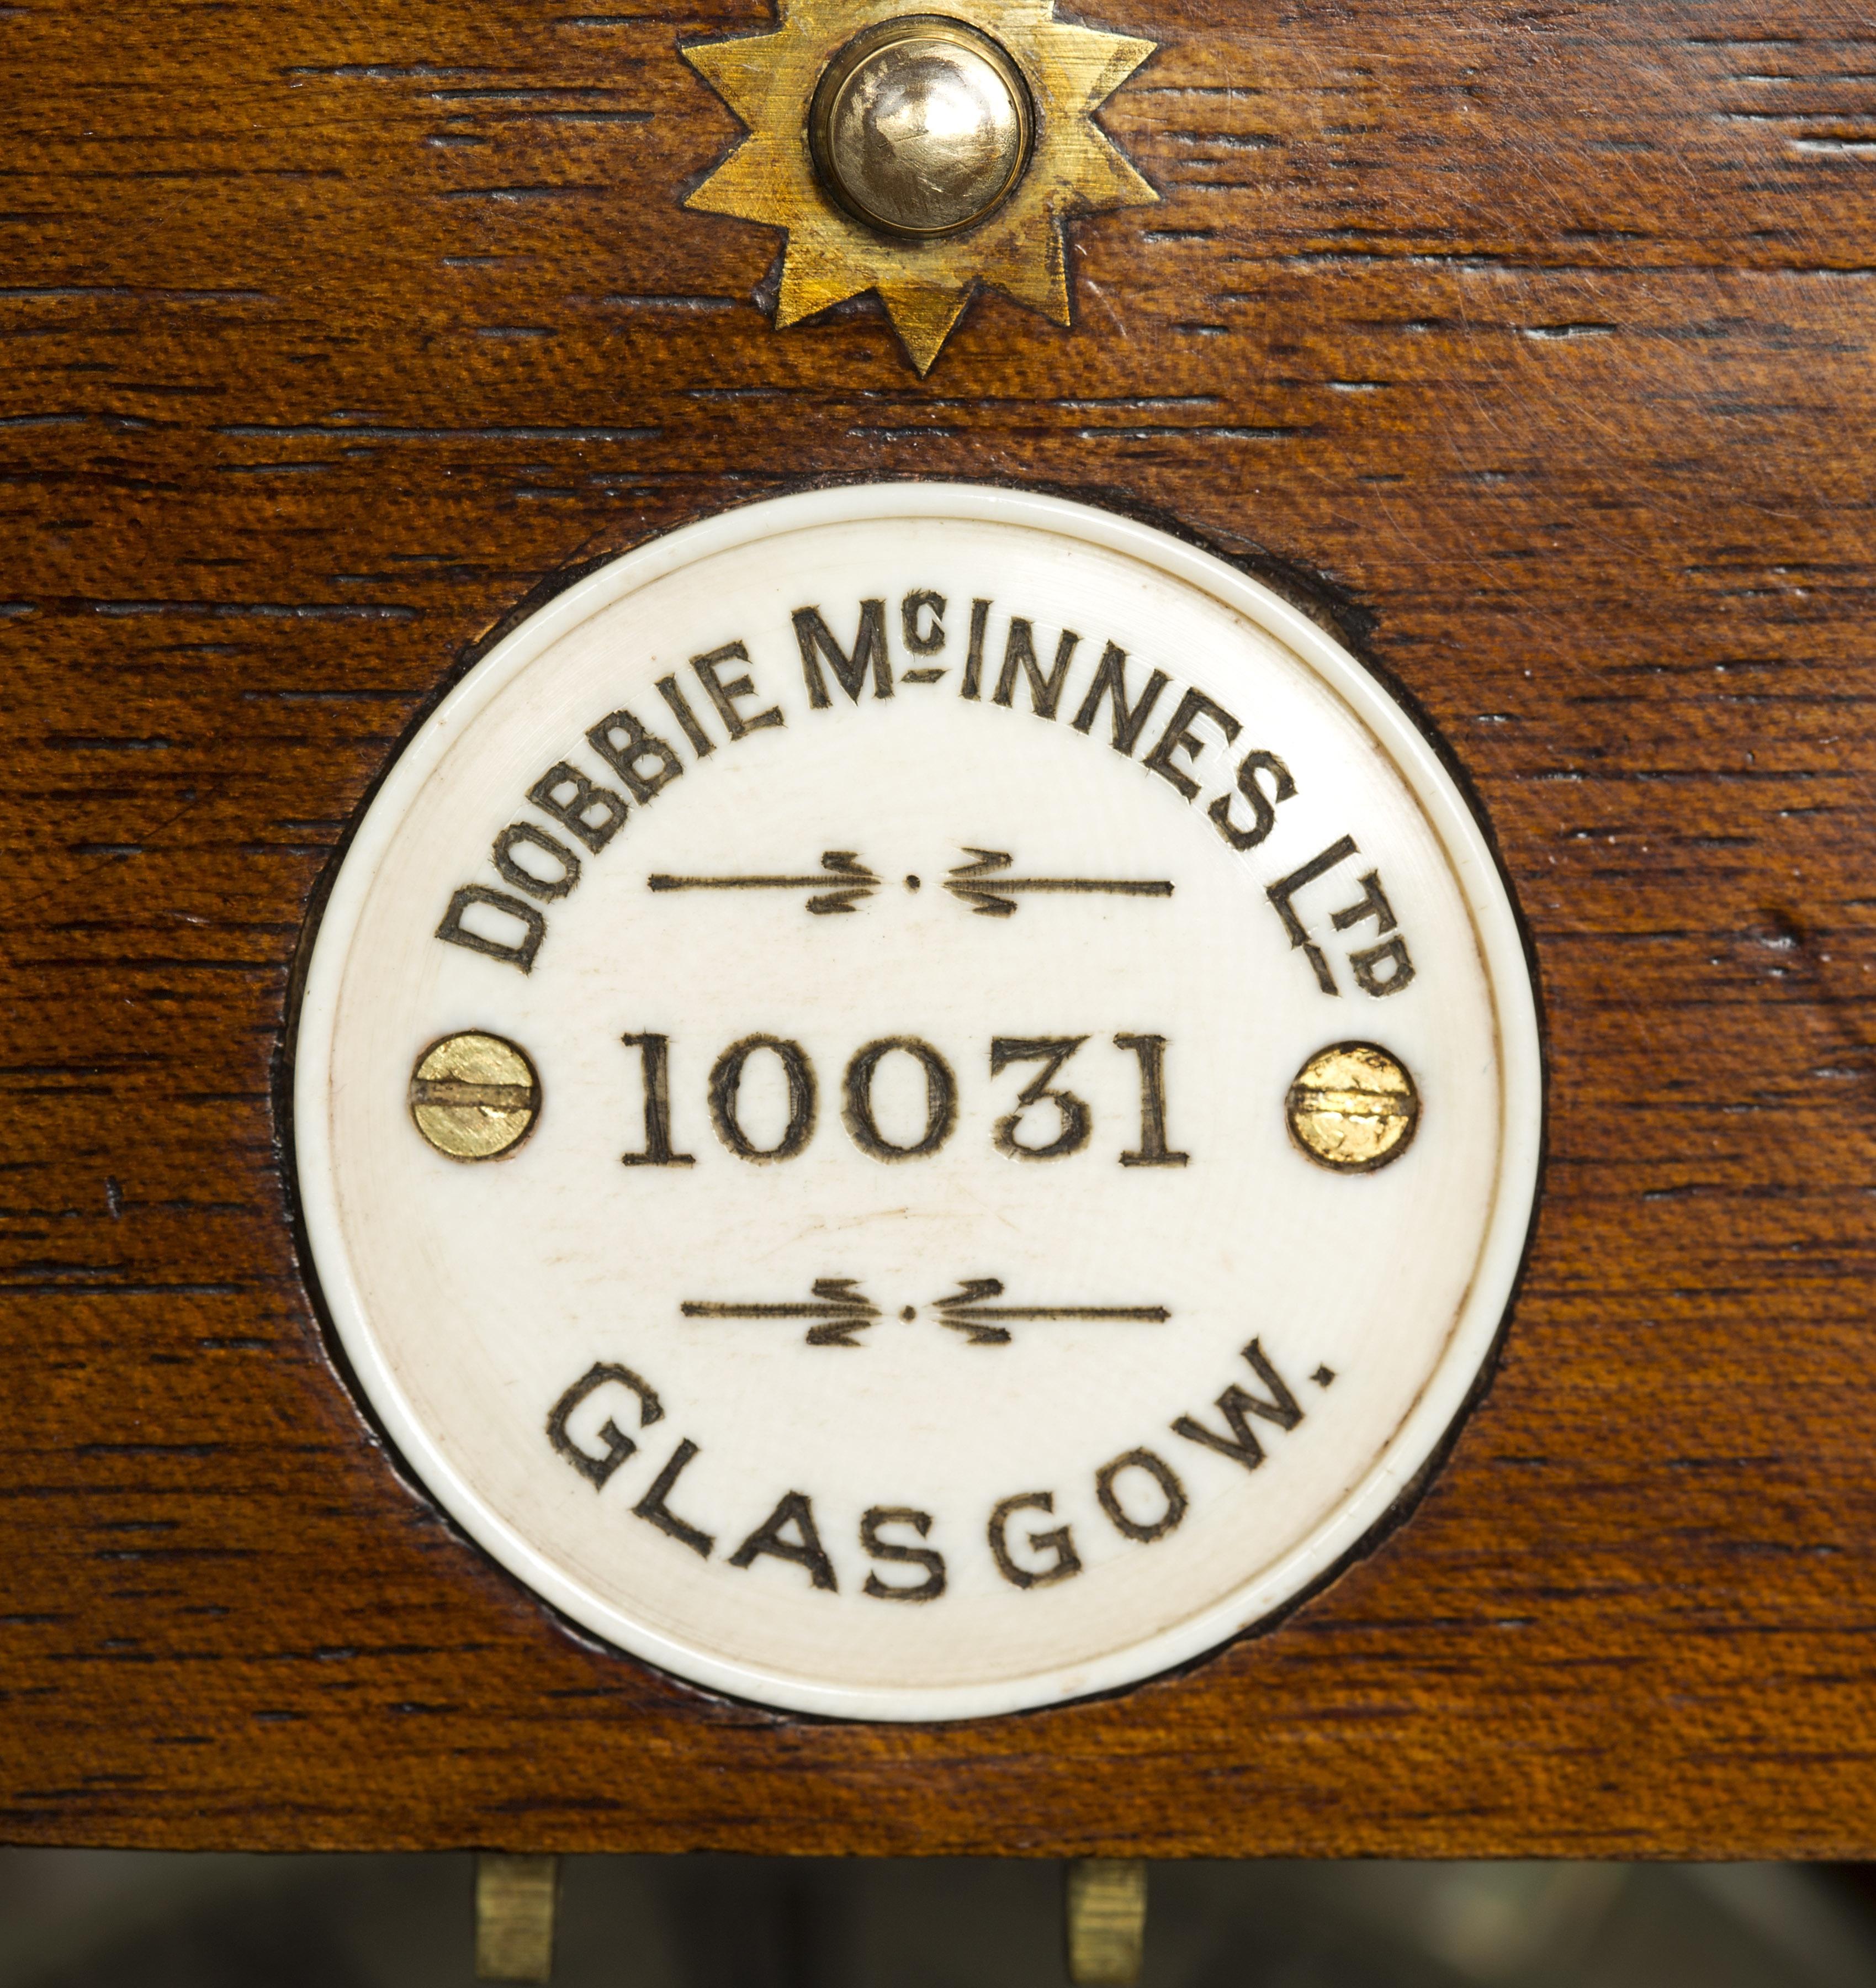 English Marine Chronometer by Dobbie McInnes Ltd 10031, Glasgow